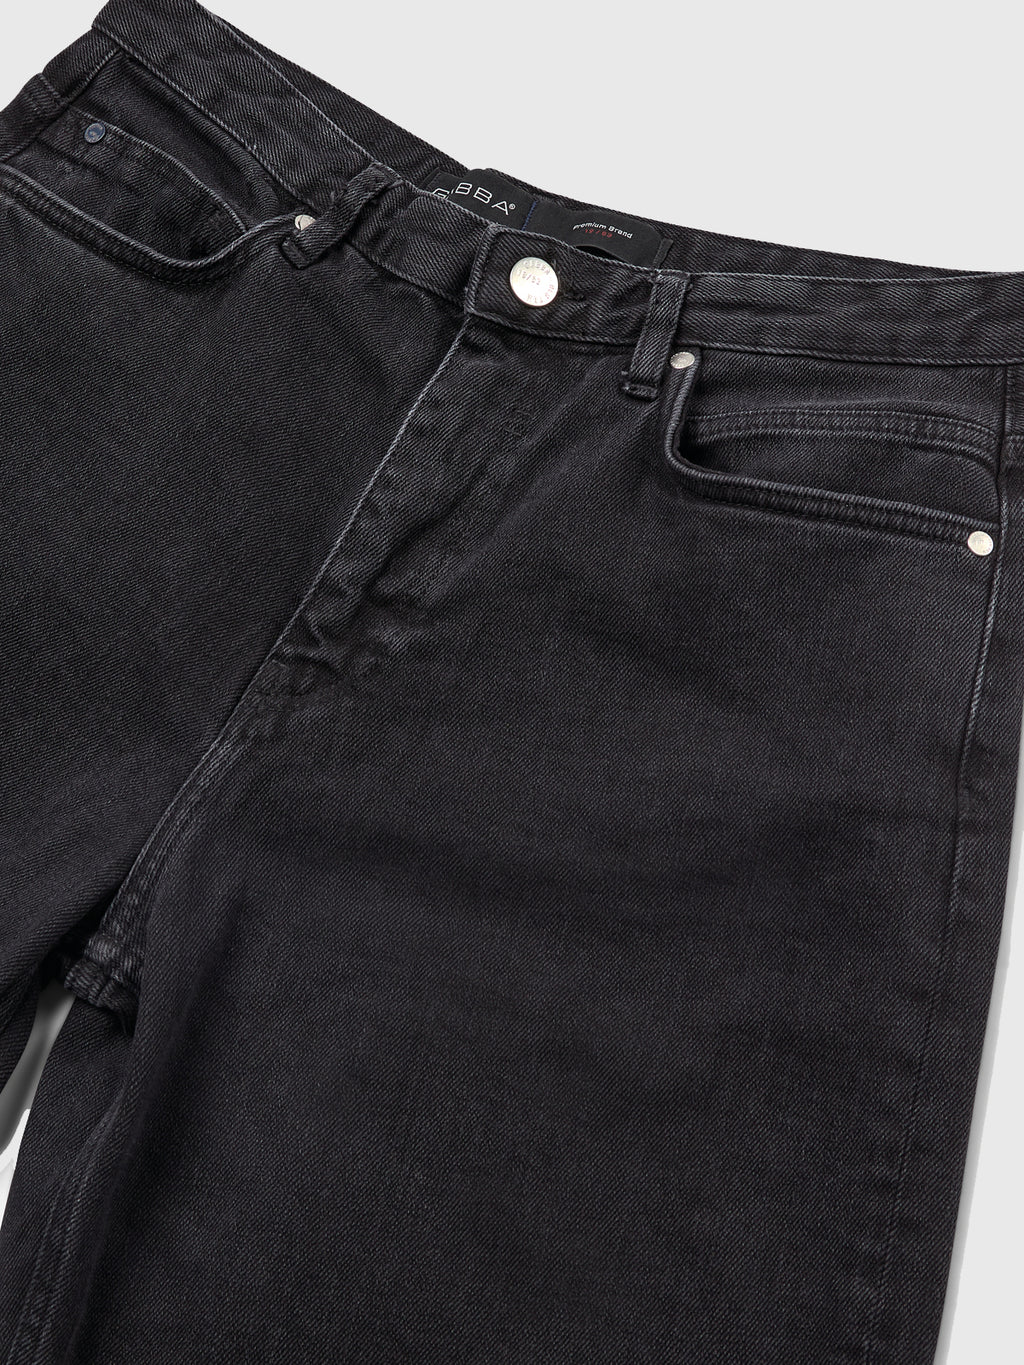 Zem K1577 Jeans - Black Denim